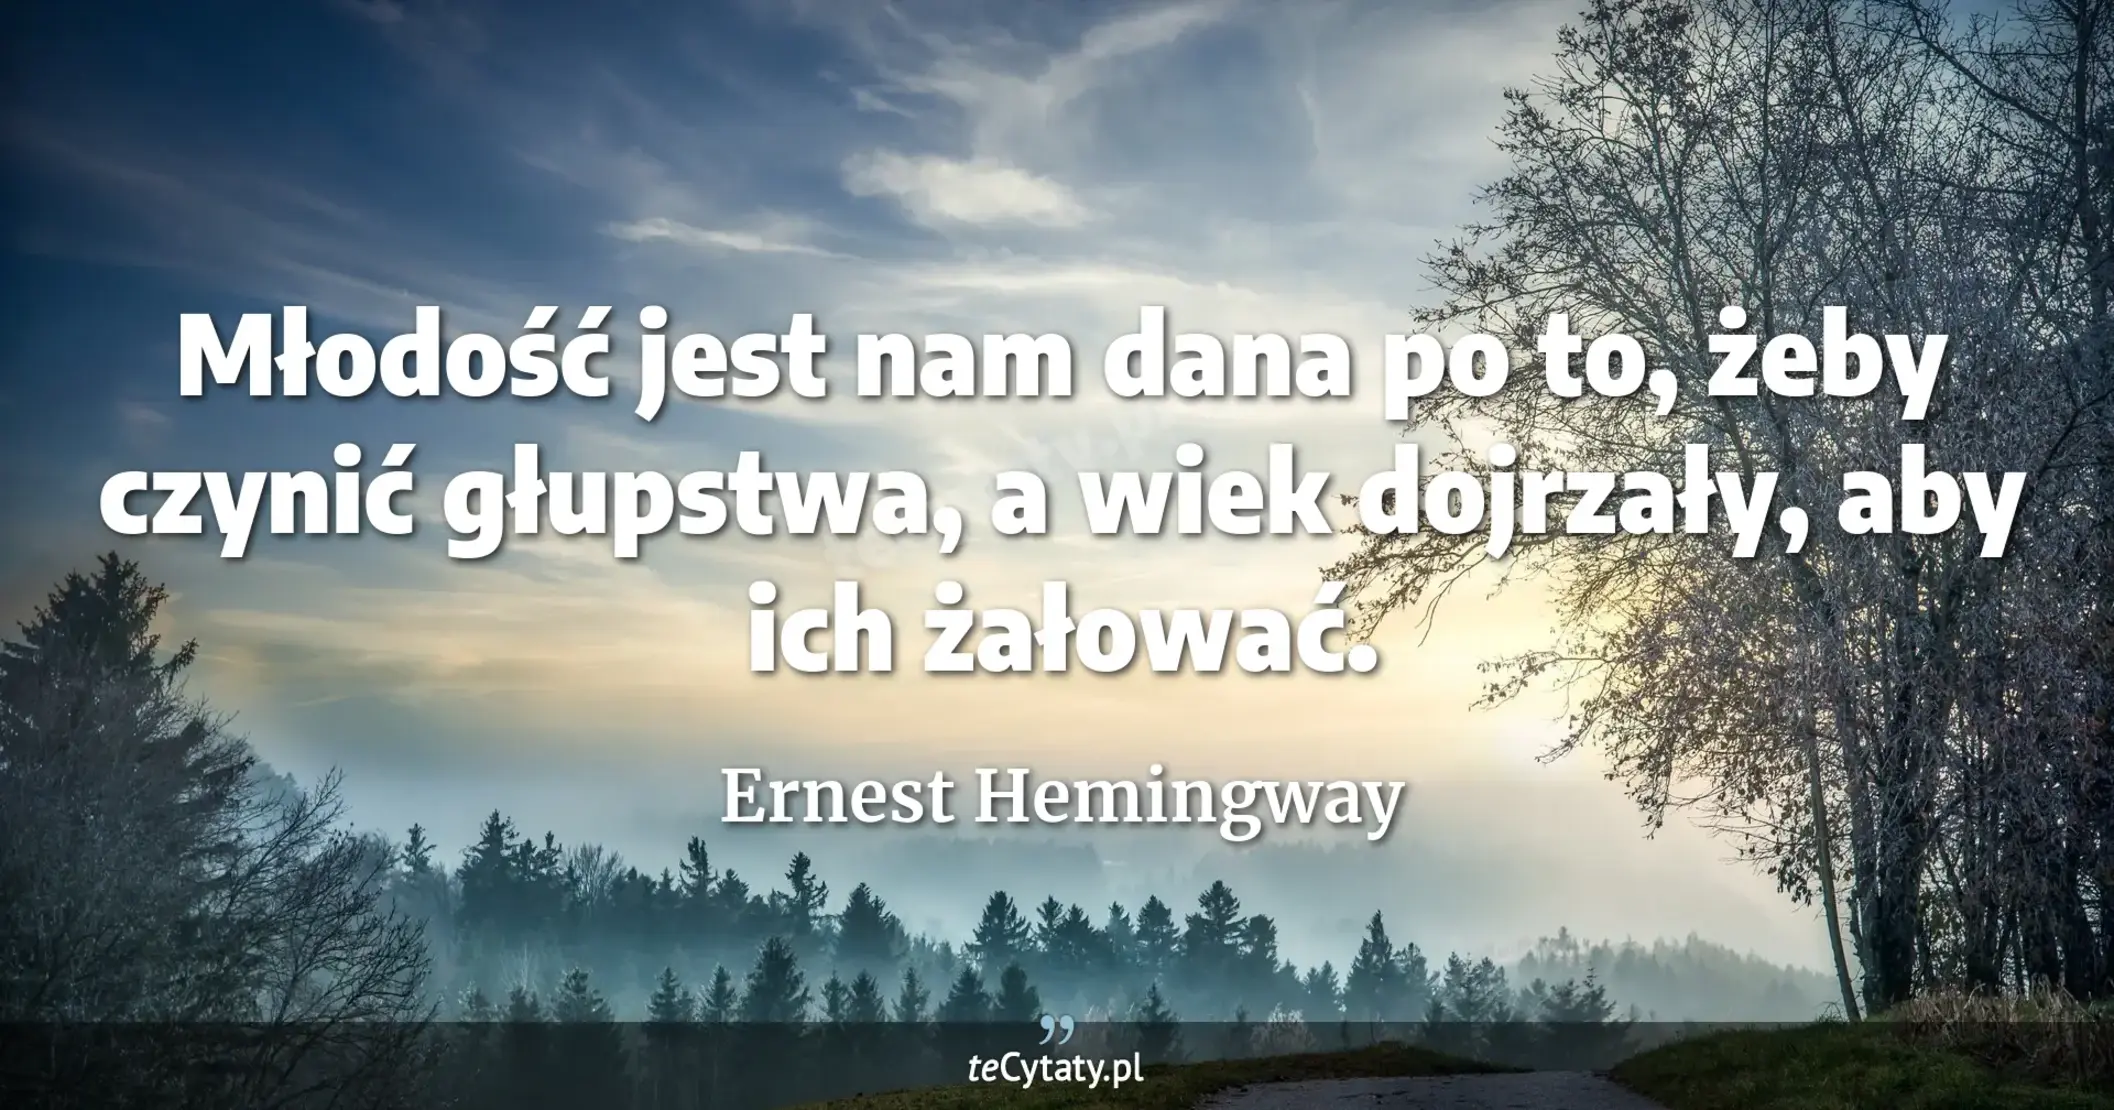 Młodość jest nam dana po to, żeby czynić głupstwa, a wiek dojrzały, aby ich żałować. - Ernest Hemingway